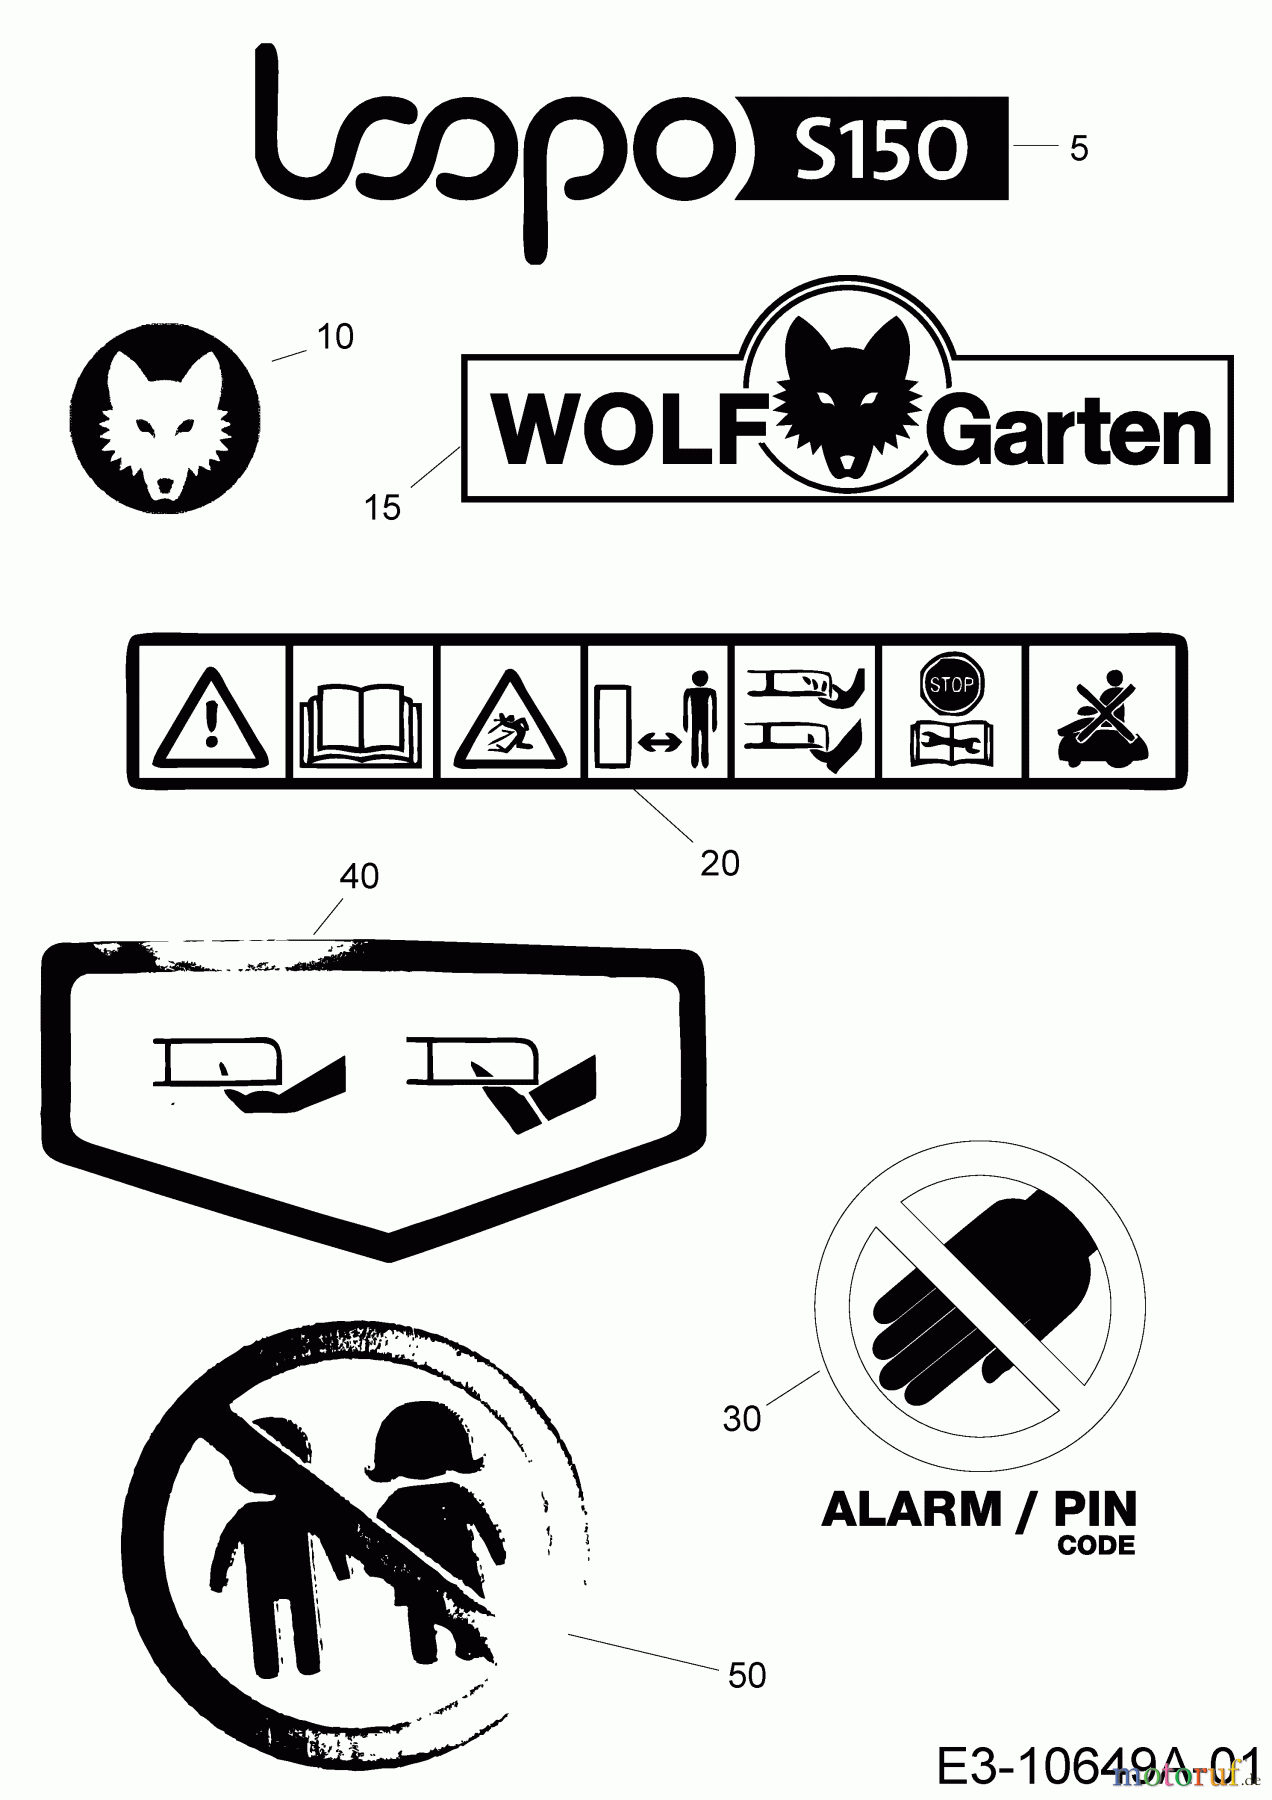  Wolf-Garten Robotic lawn mower Loopo S150 22AXBACA650 (2020) Labels